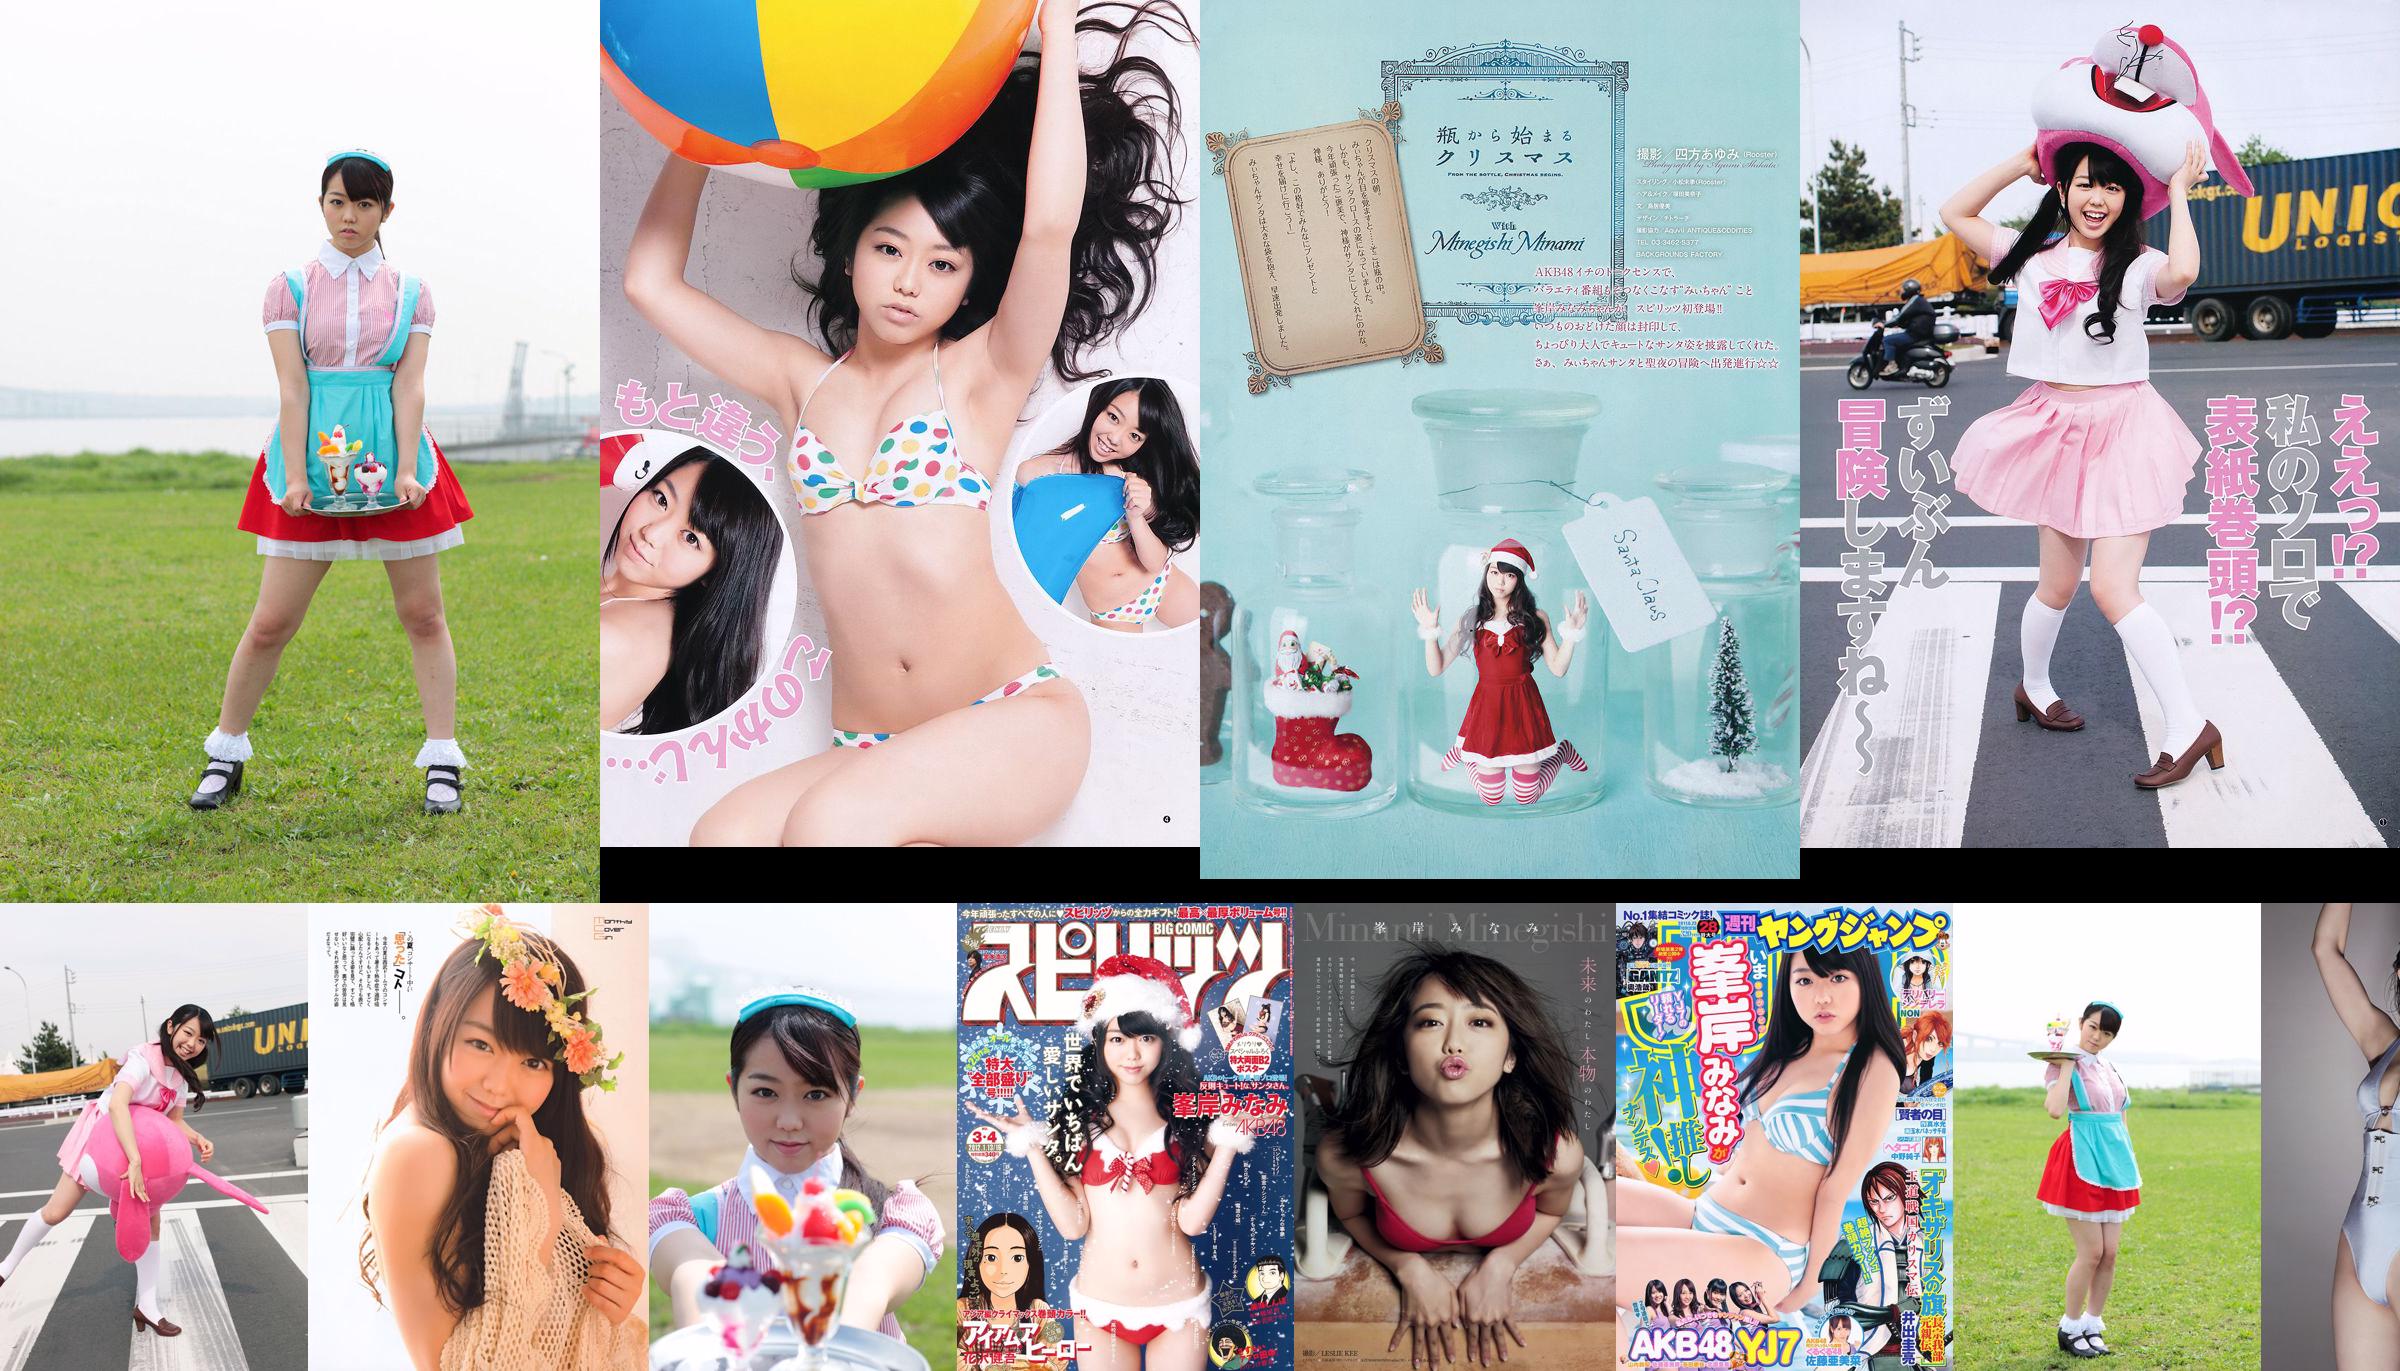 [Weekly Big Comic Spirits] Minaki Minegishi 2012 No.03-04 Photo Magazine No.6858f0 Page 4